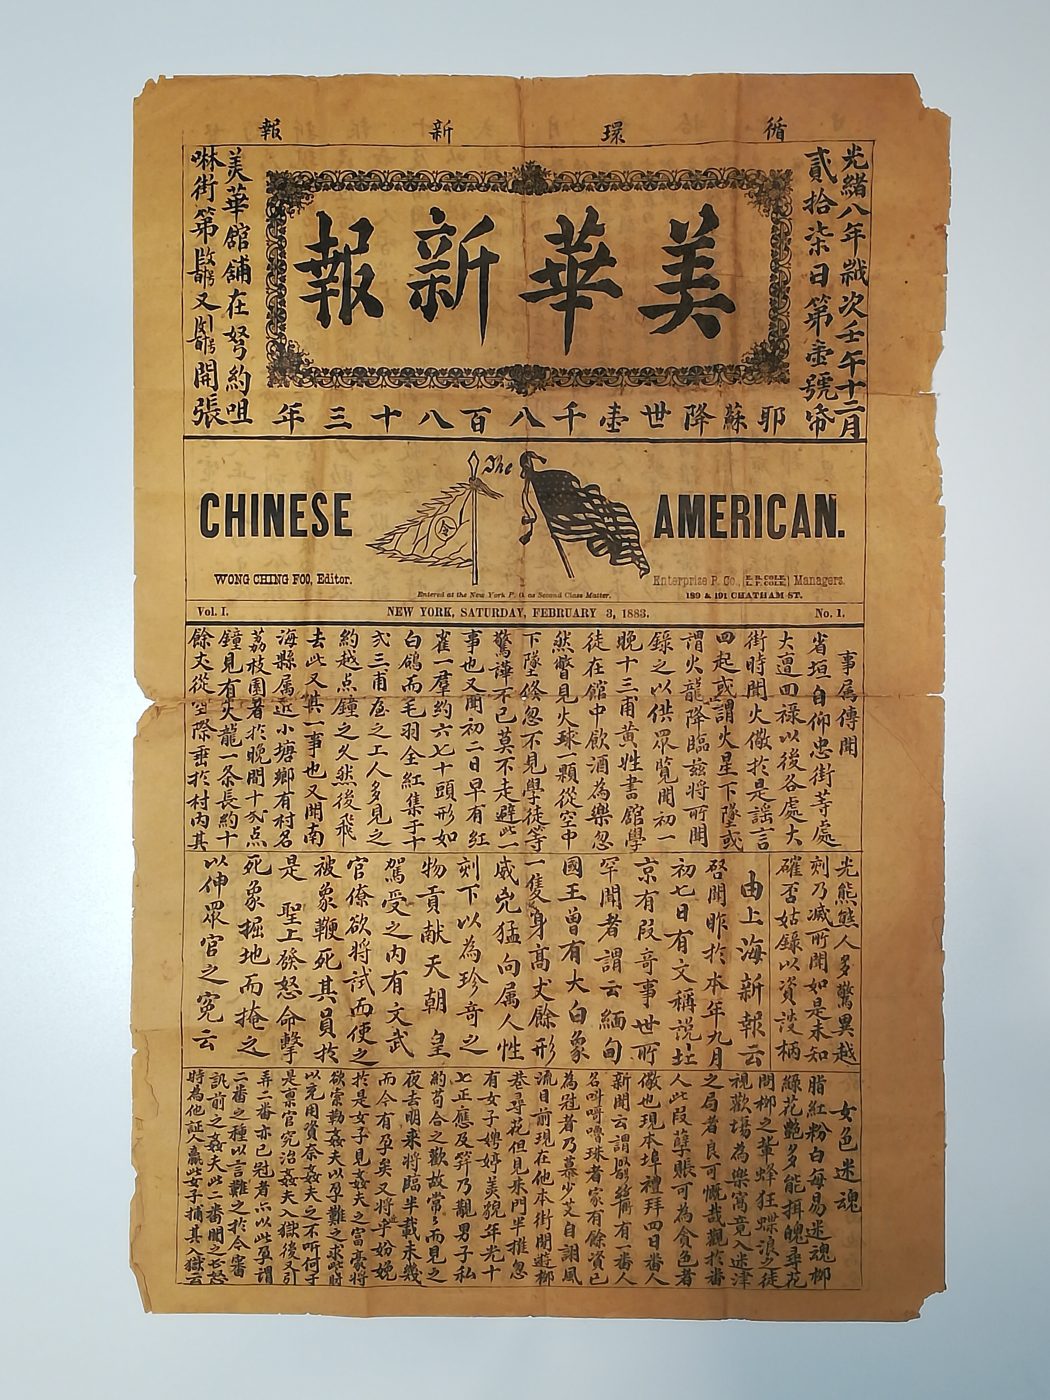 《华美新报》的第 1 页。由王家轩捐赠。美国华人博物馆（MOCA）馆藏。